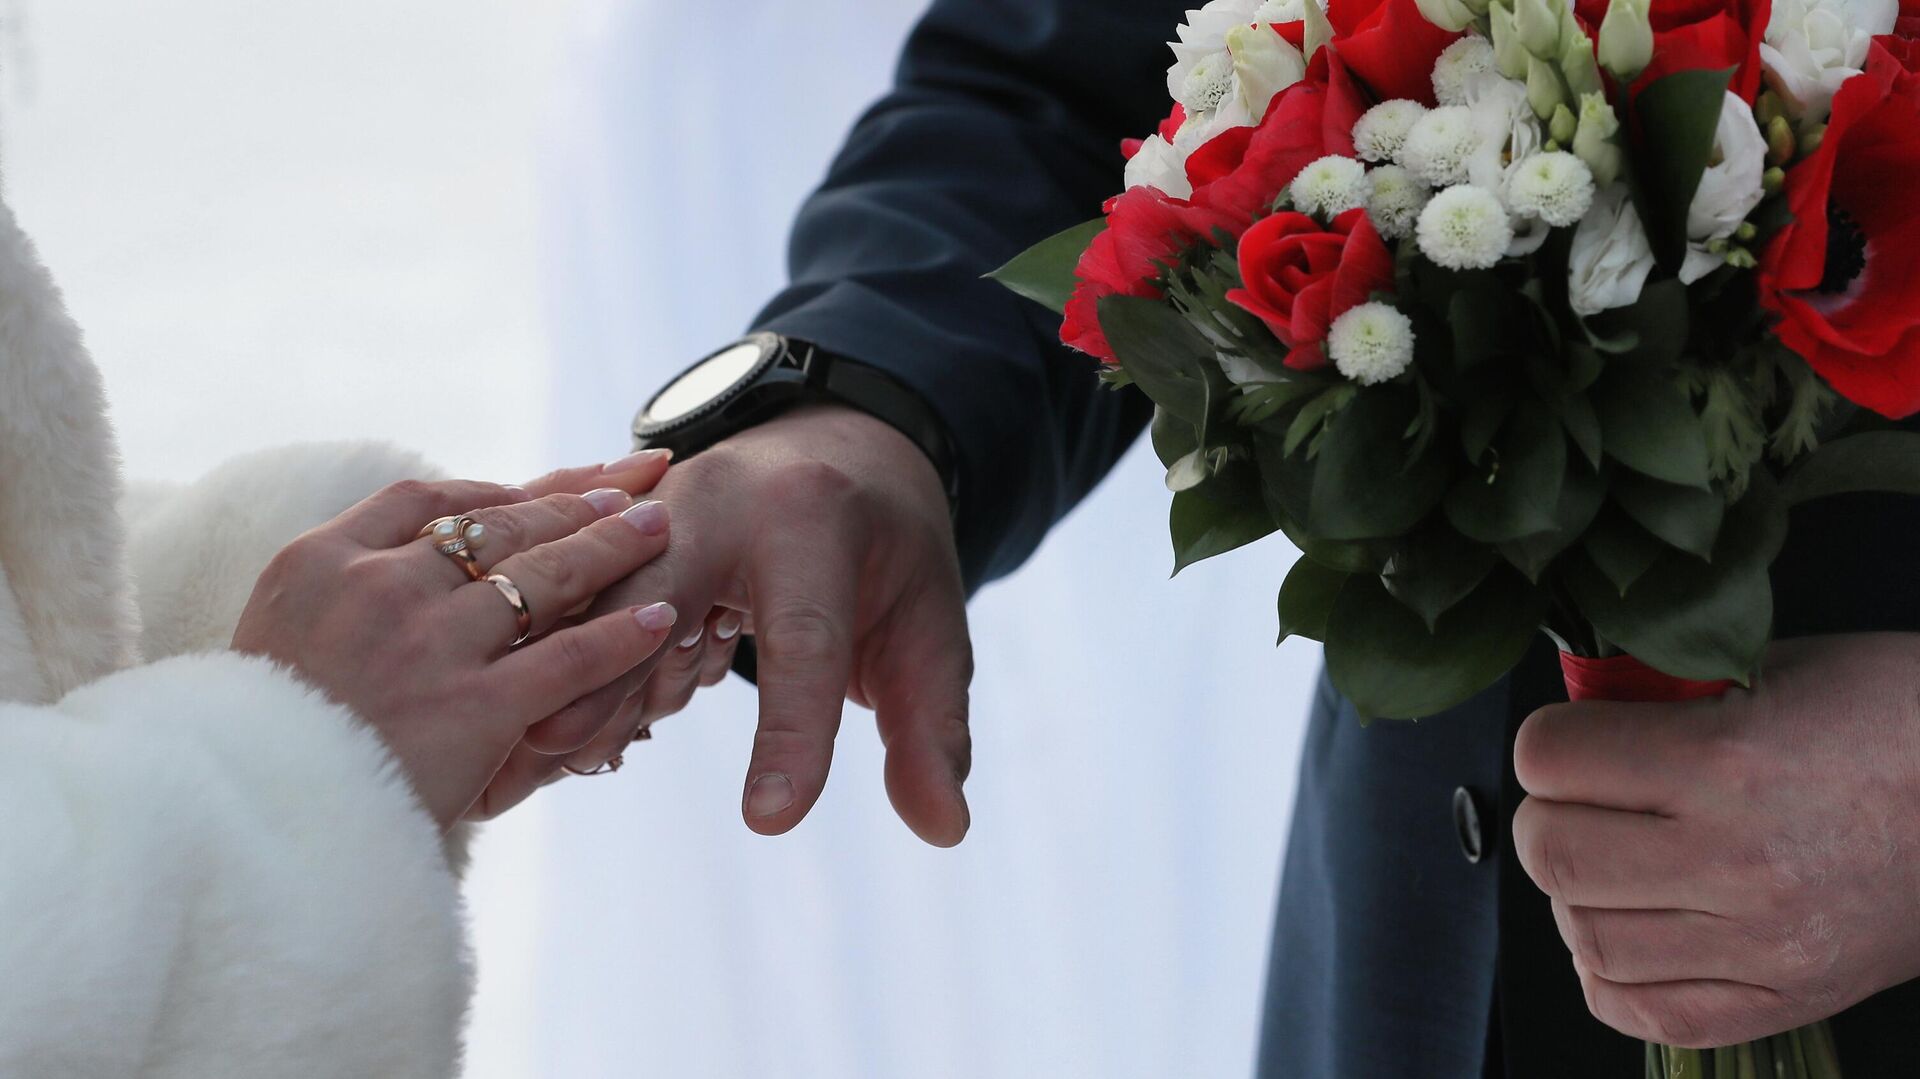 Регистрация браков в необычных местах в День всех влюбленных - Sputnik Таджикистан, 1920, 05.01.2023